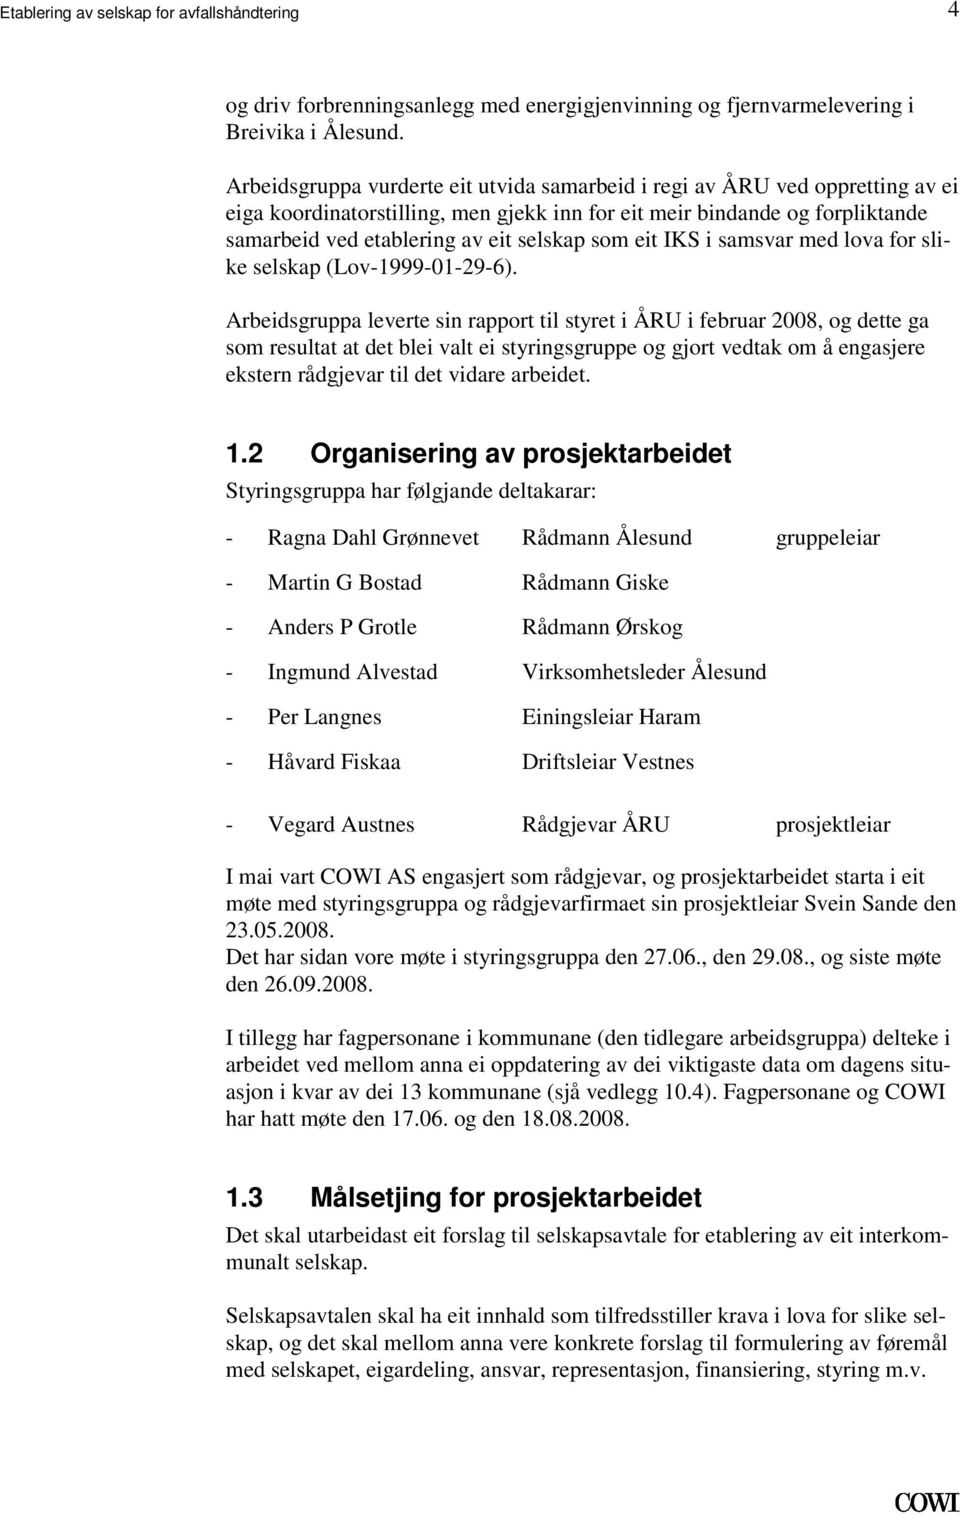 (Lov-1999-01-29-6) Arbeidsgruppa leverte sin rapport til styret i ÅRU i februar 2008, og dette ga som resultat at det blei valt ei styringsgruppe og gjort vedtak om å engasjere ekstern rådgjevar til